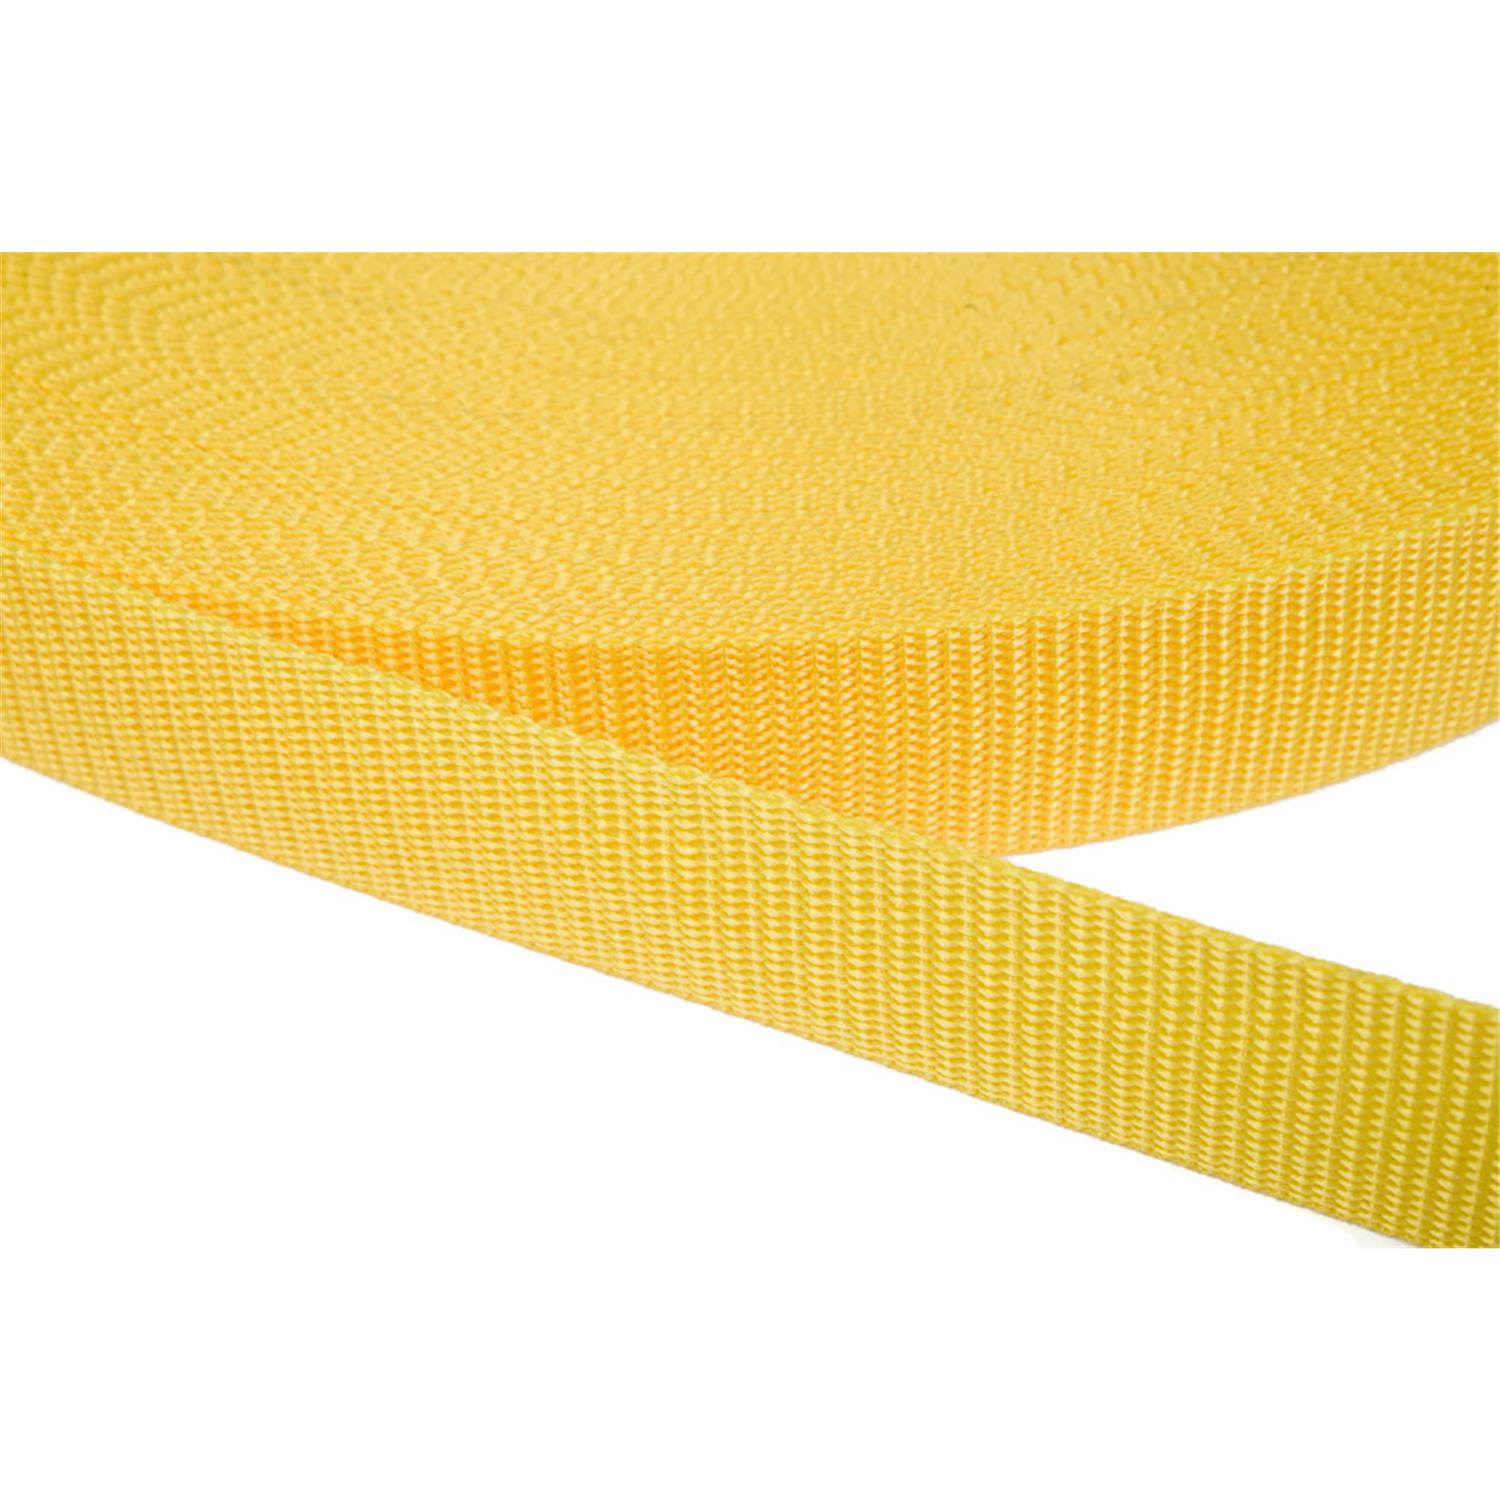 Gurtband 25mm breit aus Polypropylen in 41 Farben 10 - gelb 6 Meter